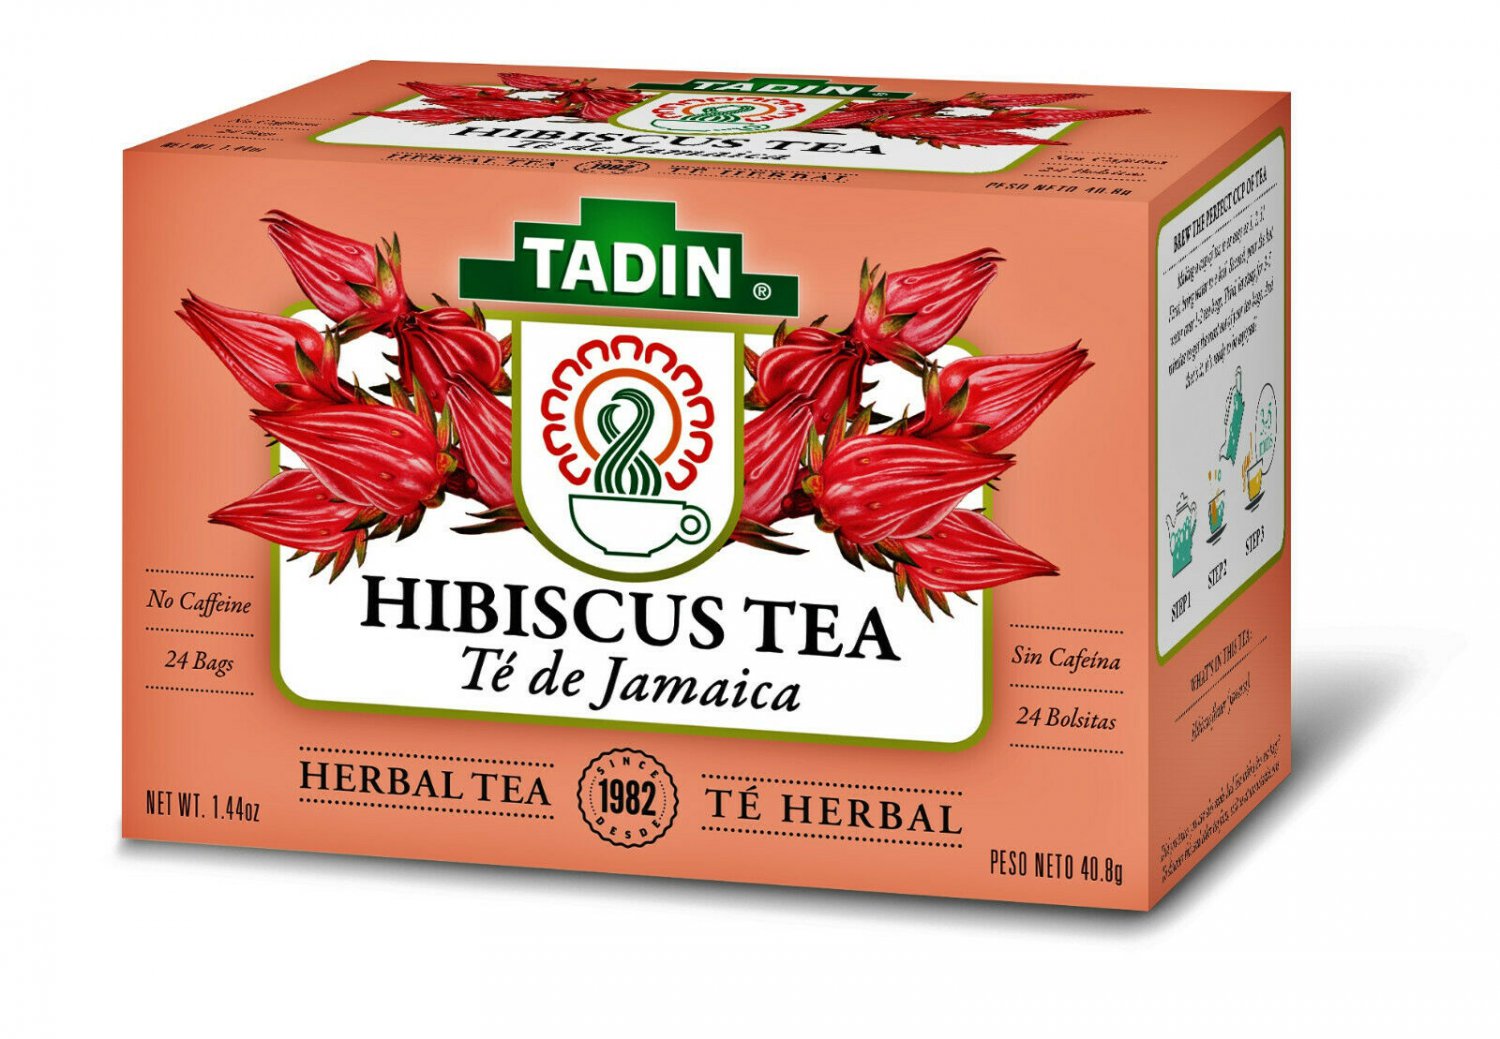 Каркаде кофеин. Hibiscus Tea Bags. Herbal collection чай каркаде. Кофеин в каркаде. Чай 24/7.